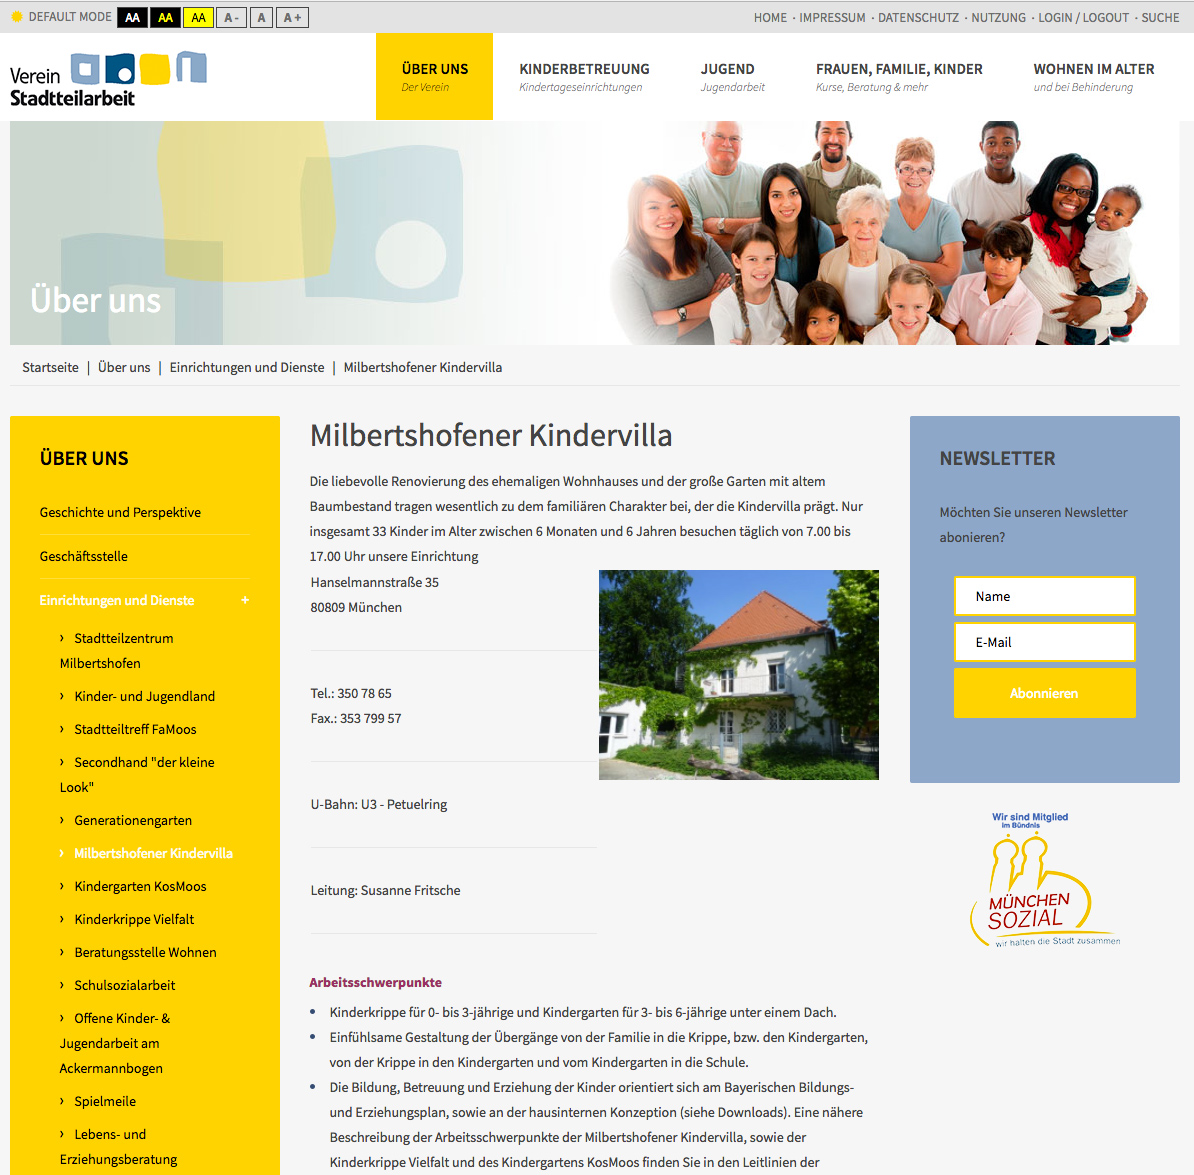 Über uns - Webdesign Verein für Stadtteilarbeit e.V.